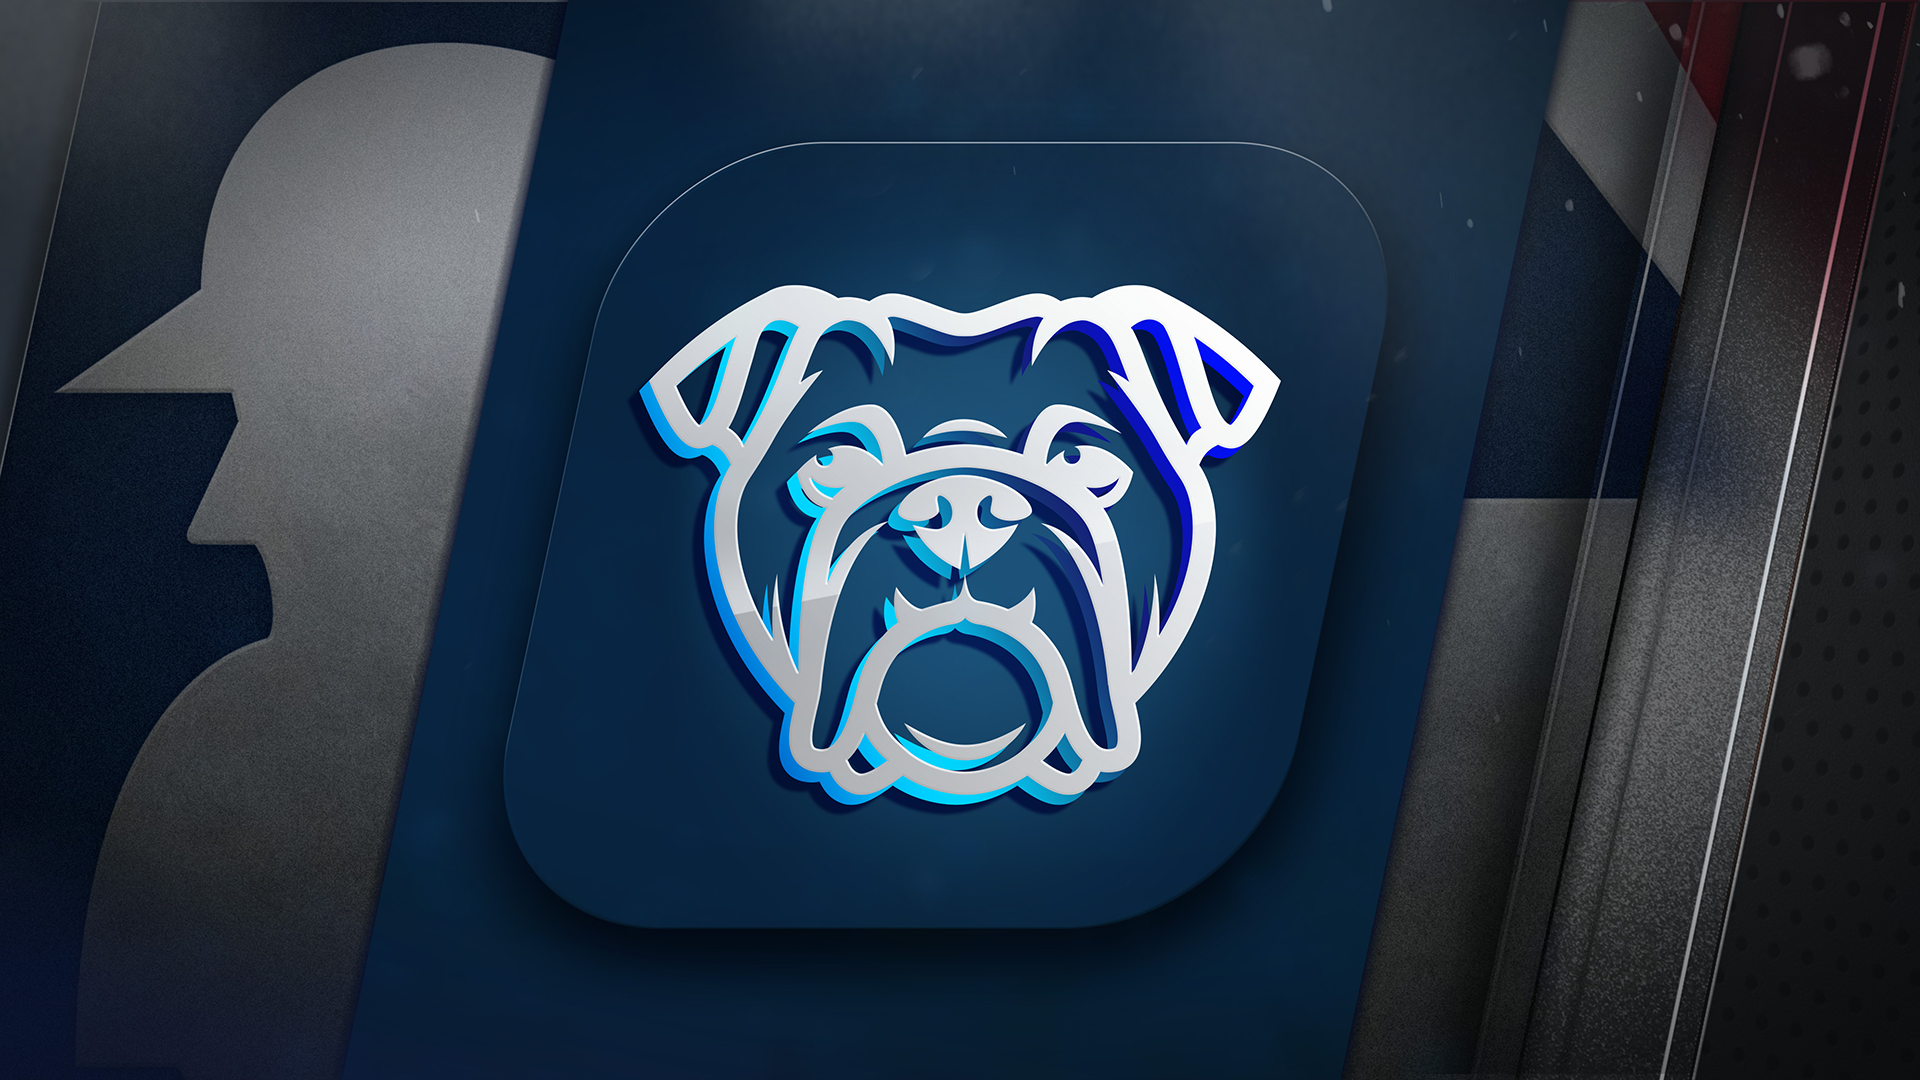 Icon for Bulldog